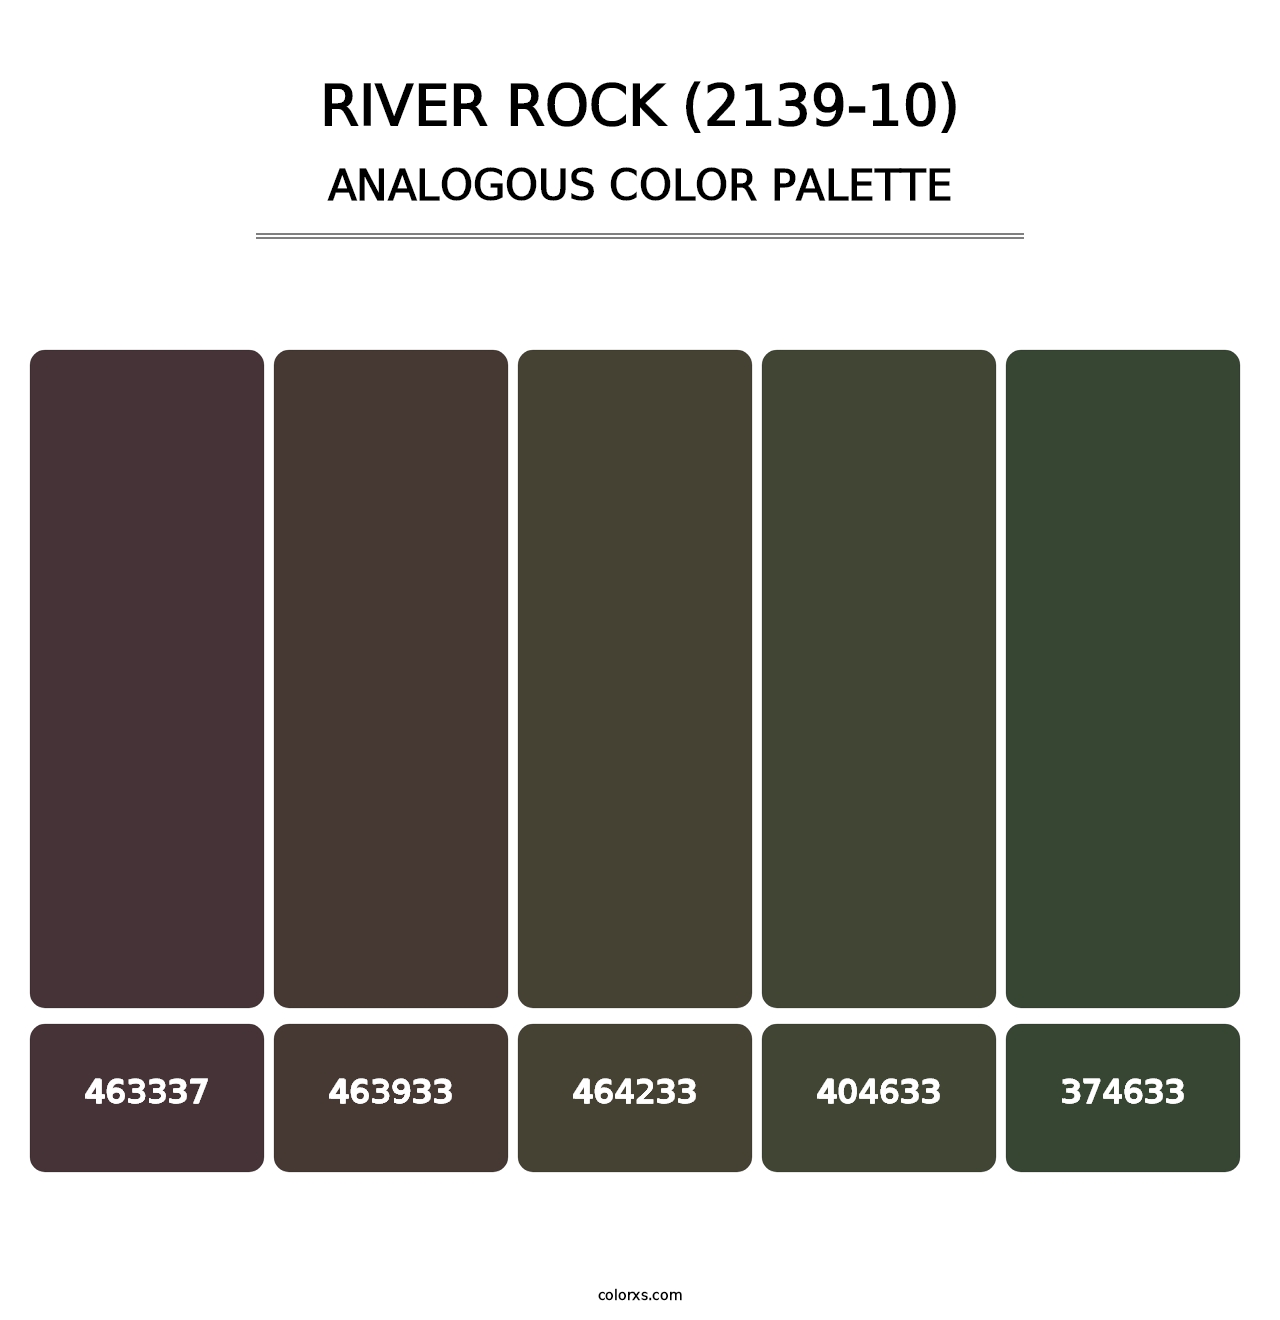 River Rock (2139-10) - Analogous Color Palette